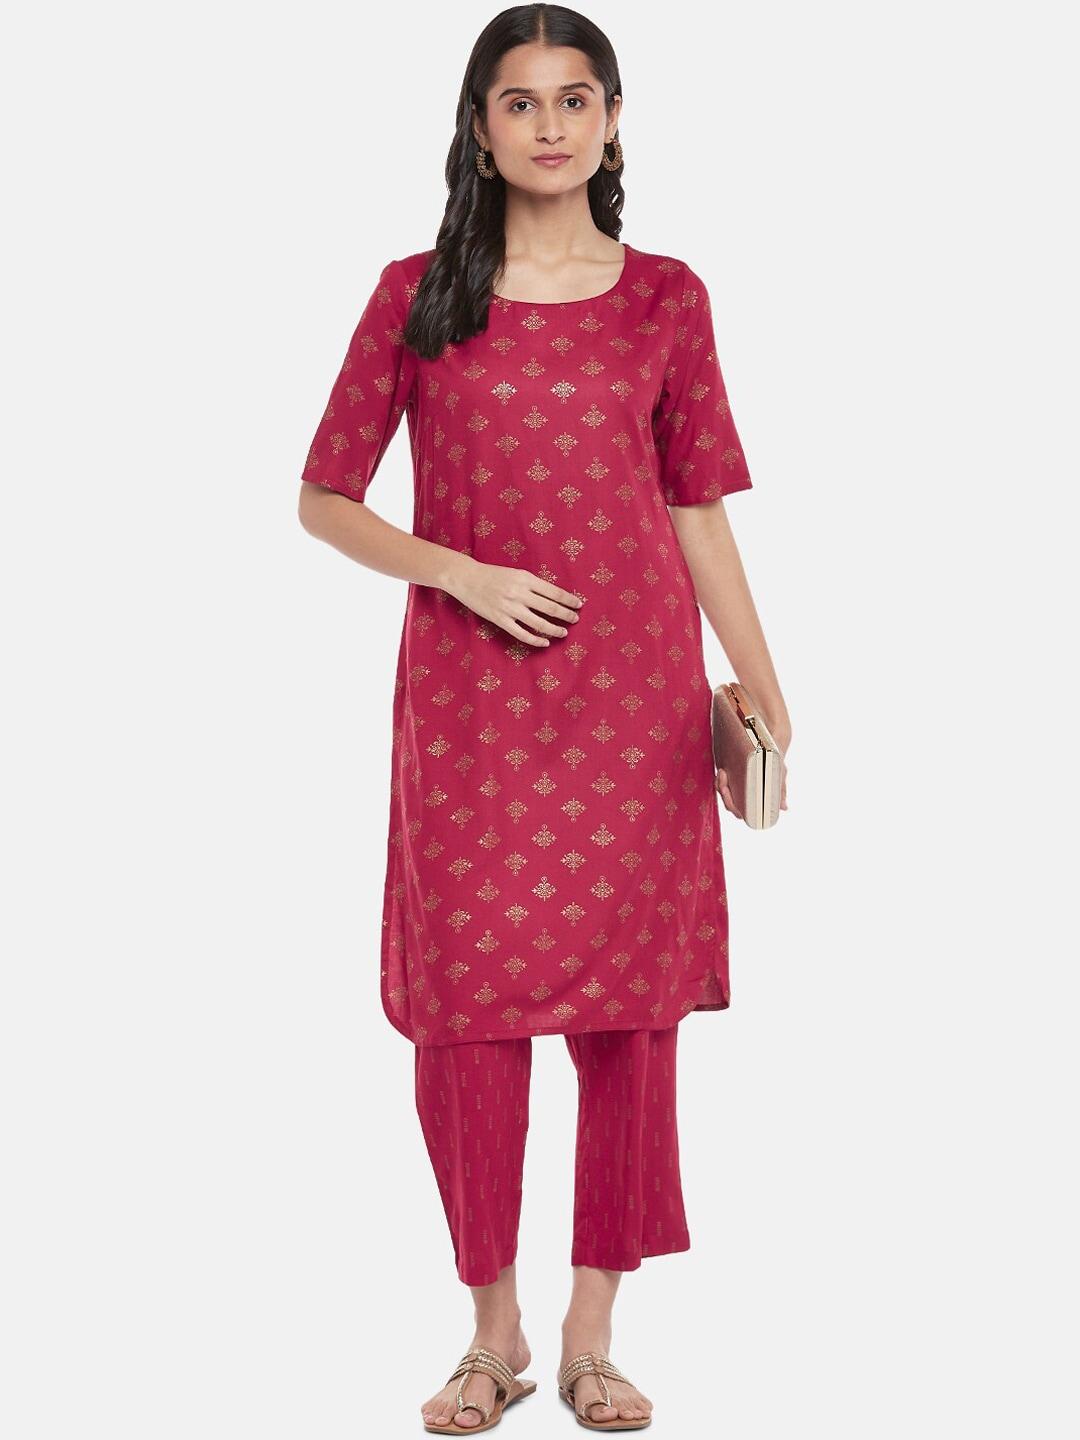 rangmanch-by-pantaloons-women-pink-ethnic-motifs-printed-kurta-set